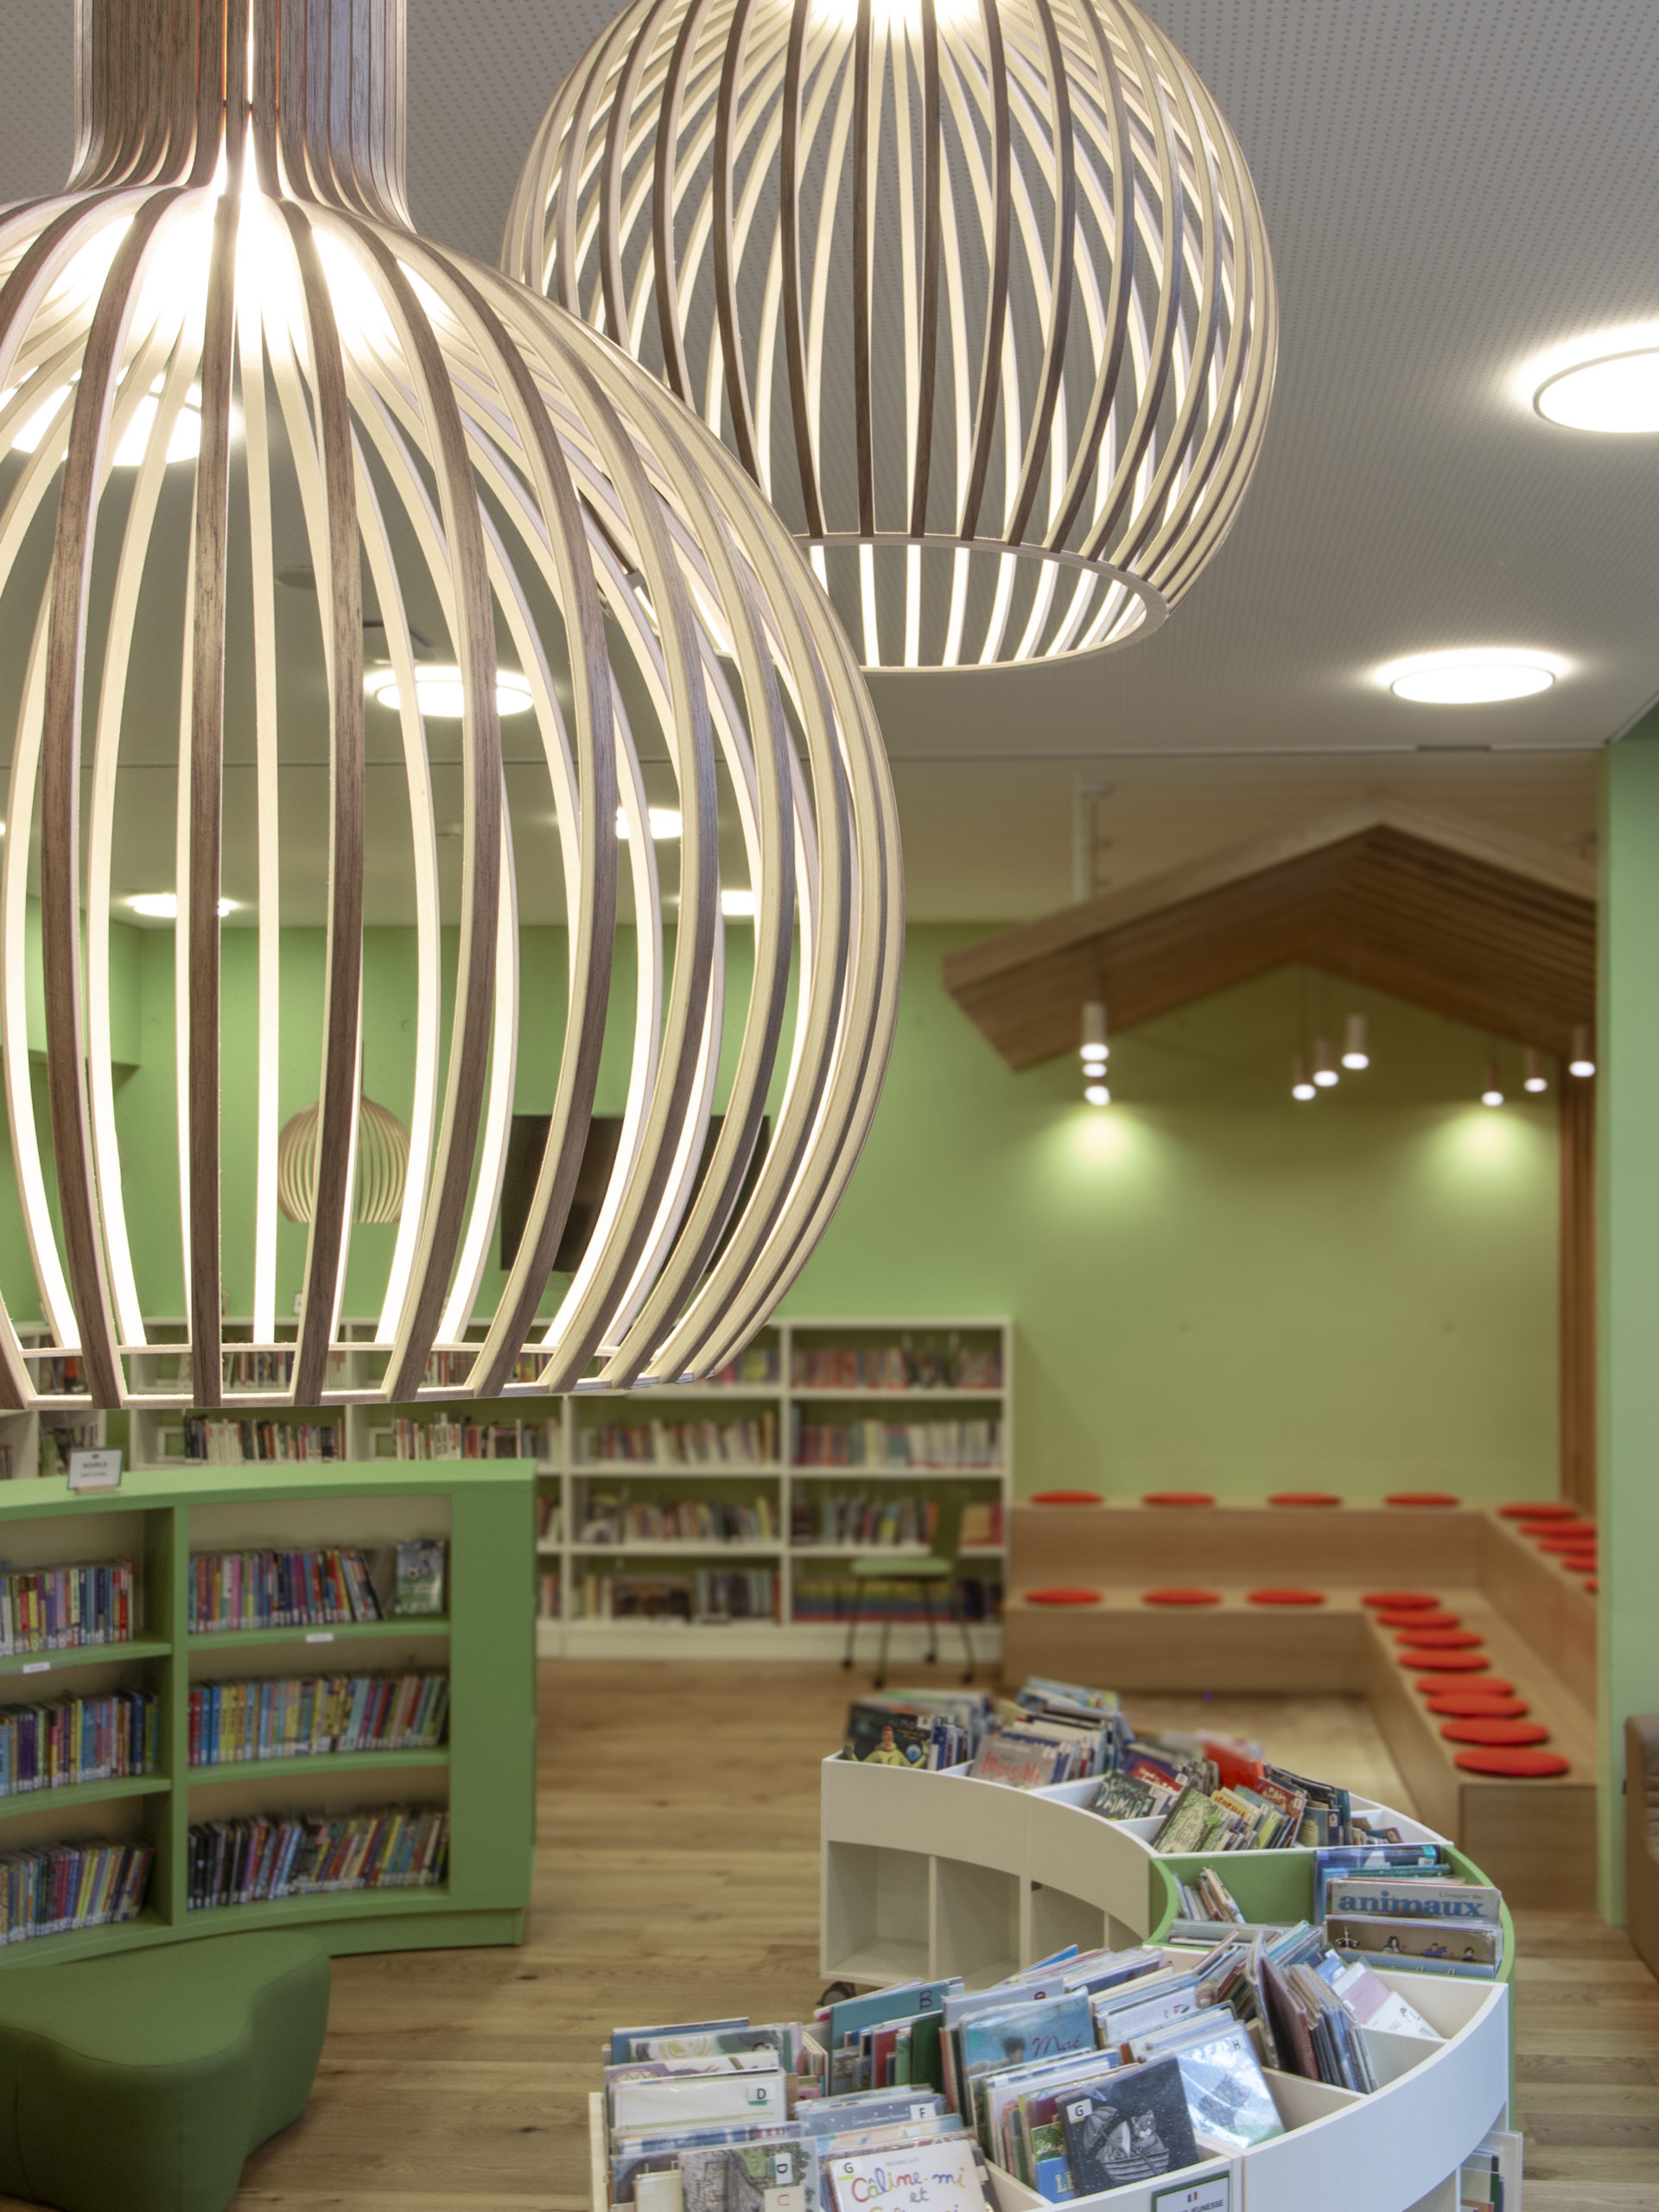 Création d’une bibliothèque scolaire